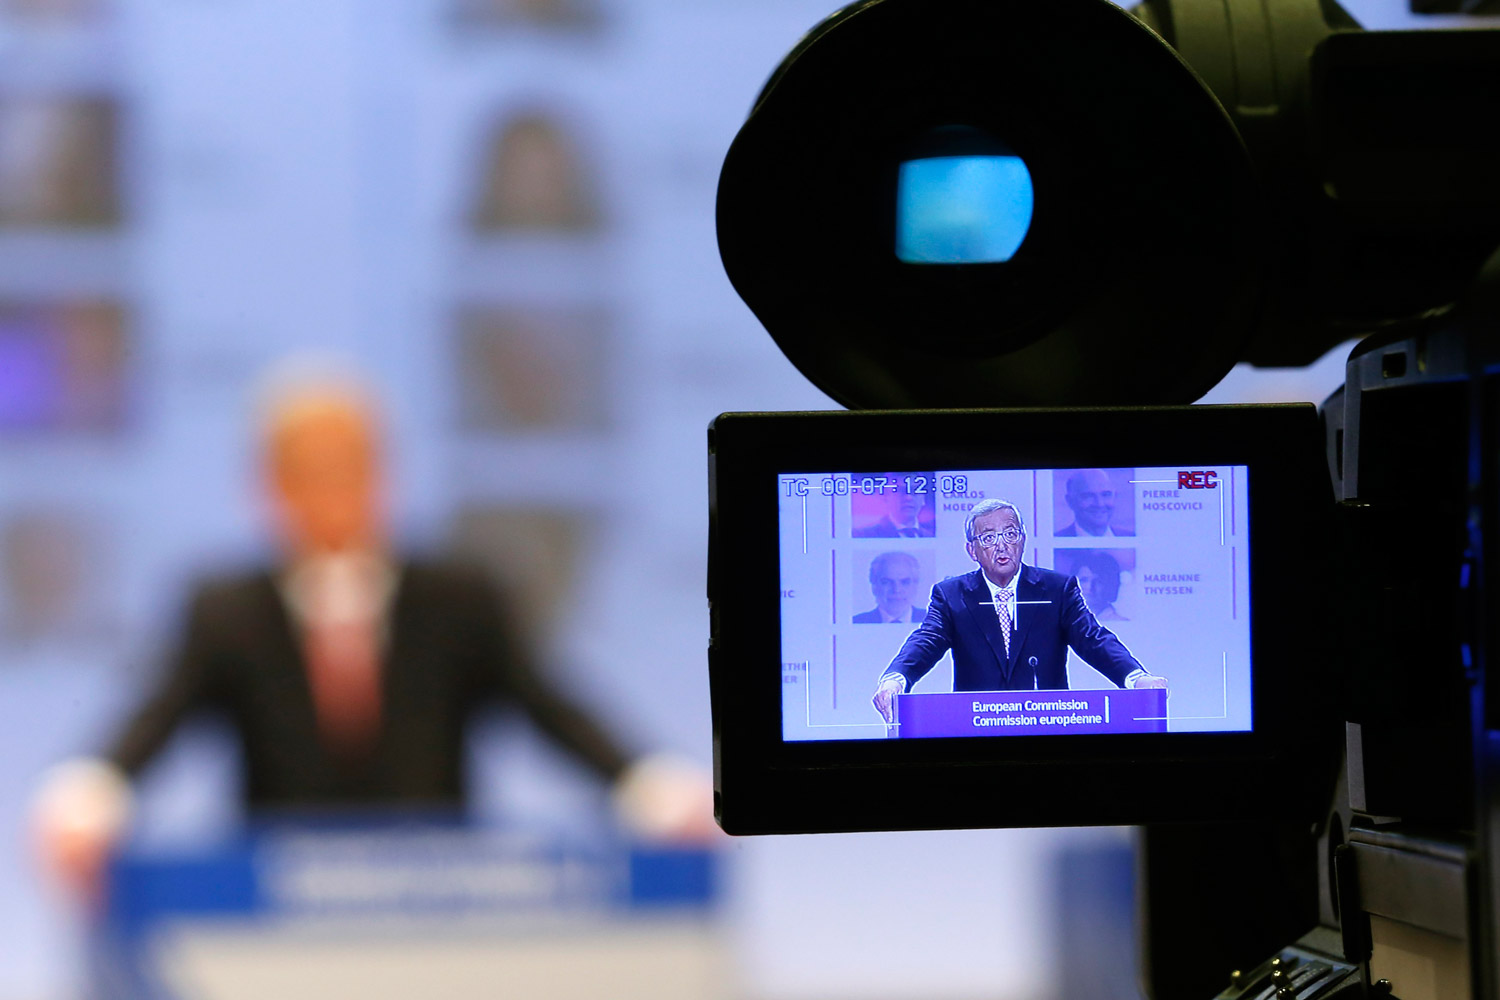 Juncker confía a Francia y Reino Unido los puestos claves de la nueva Comisión Europea